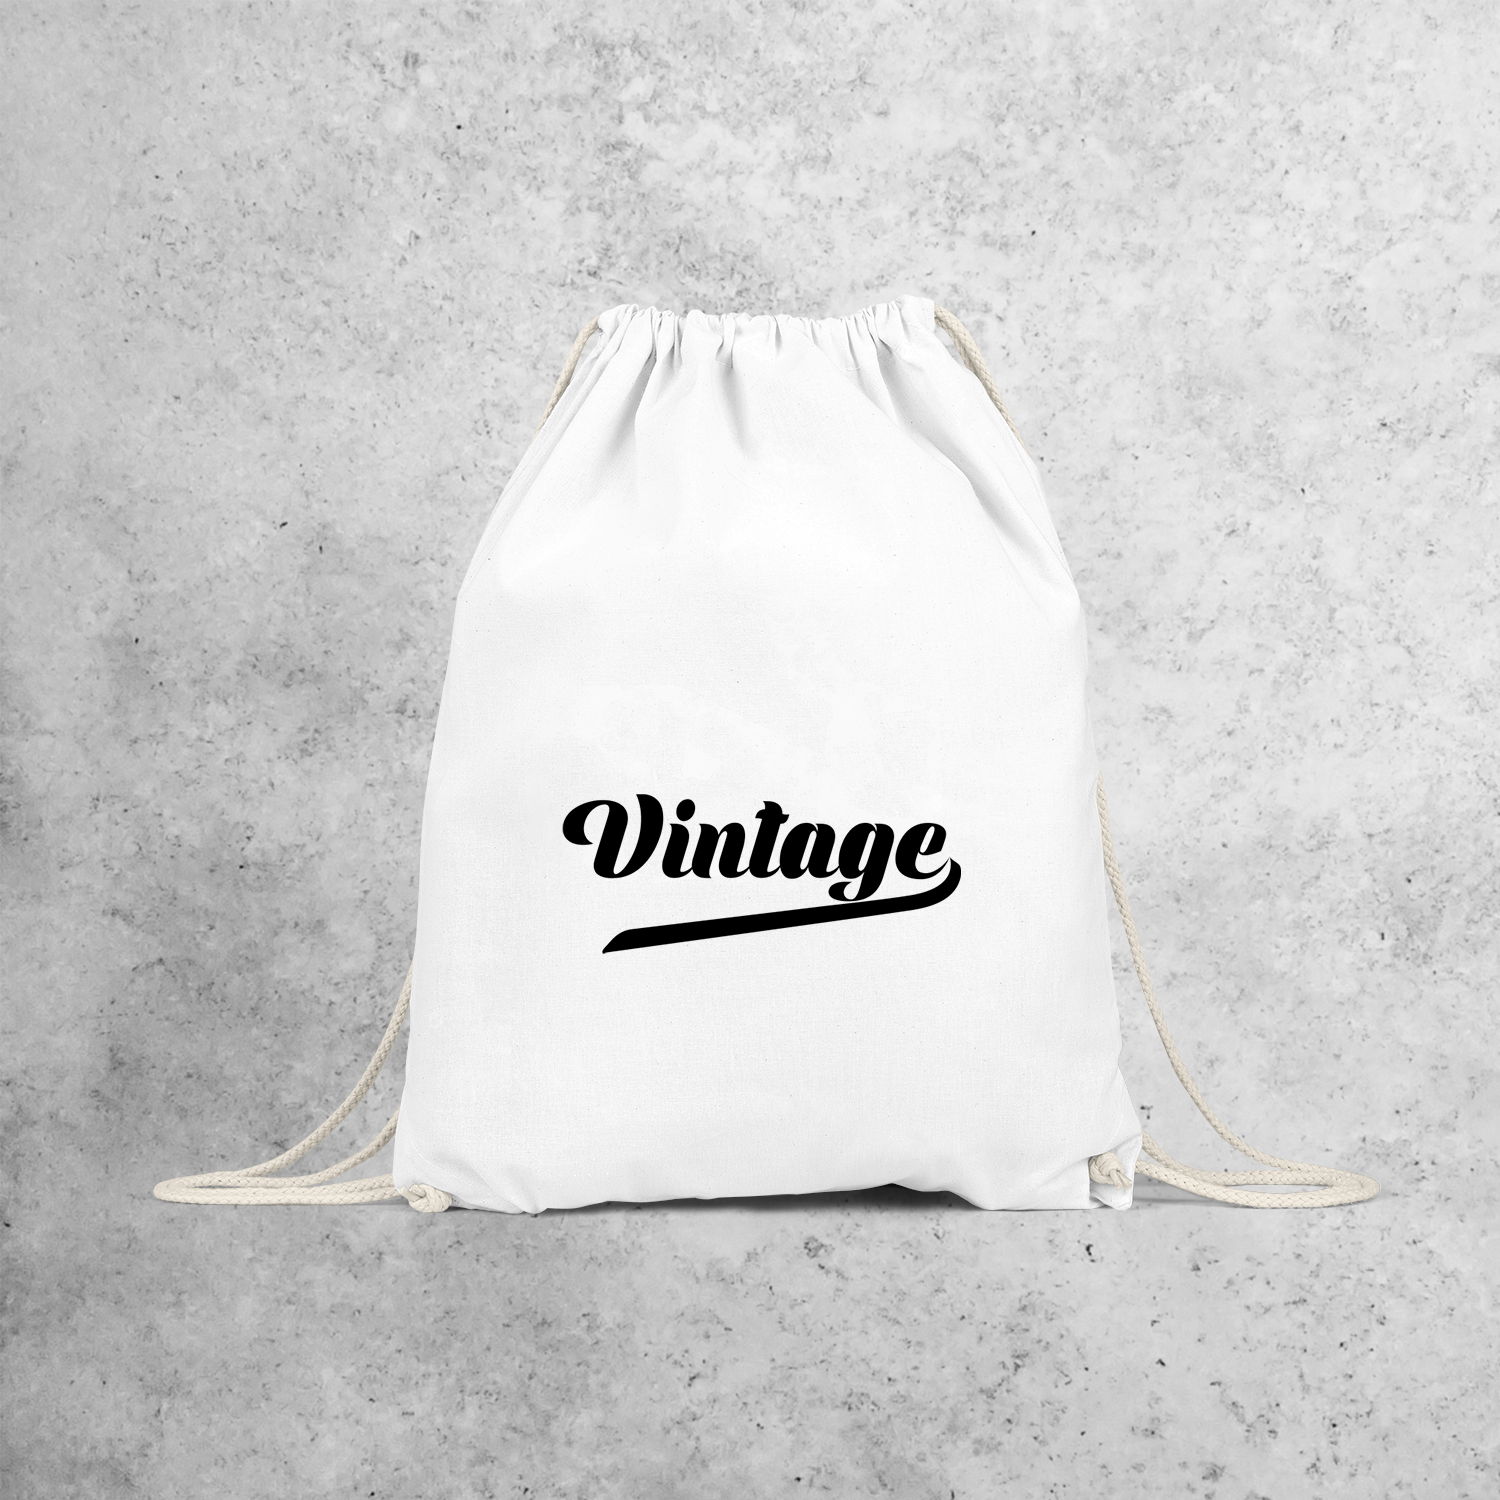 'Vintage' backpack